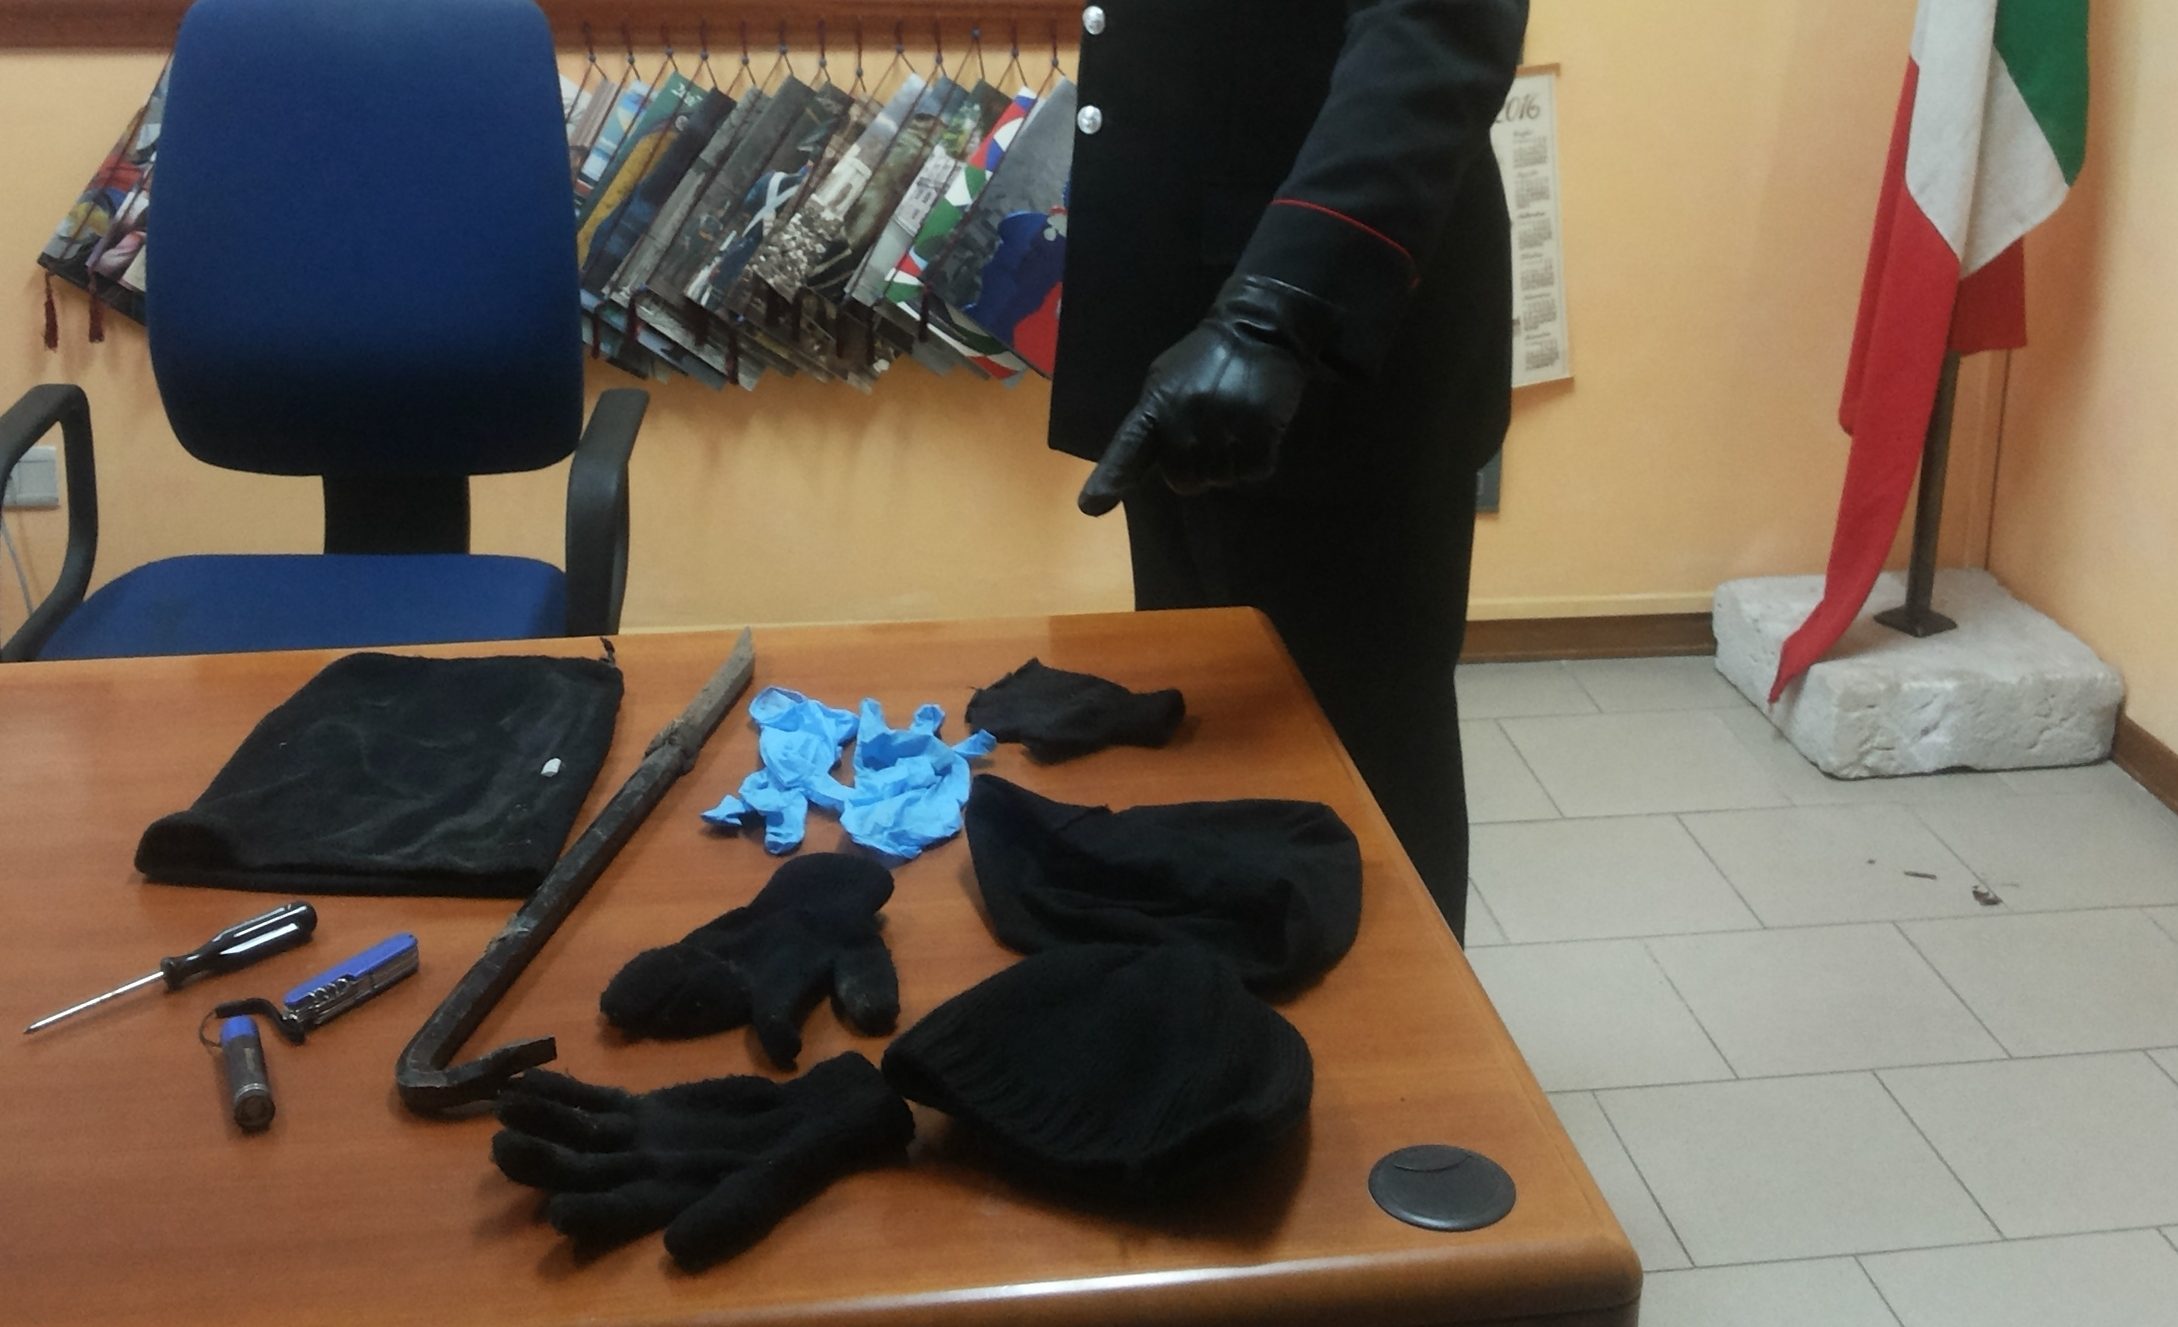 Pietrelcina| In auto con attrezzi per furti, denunciato albanese